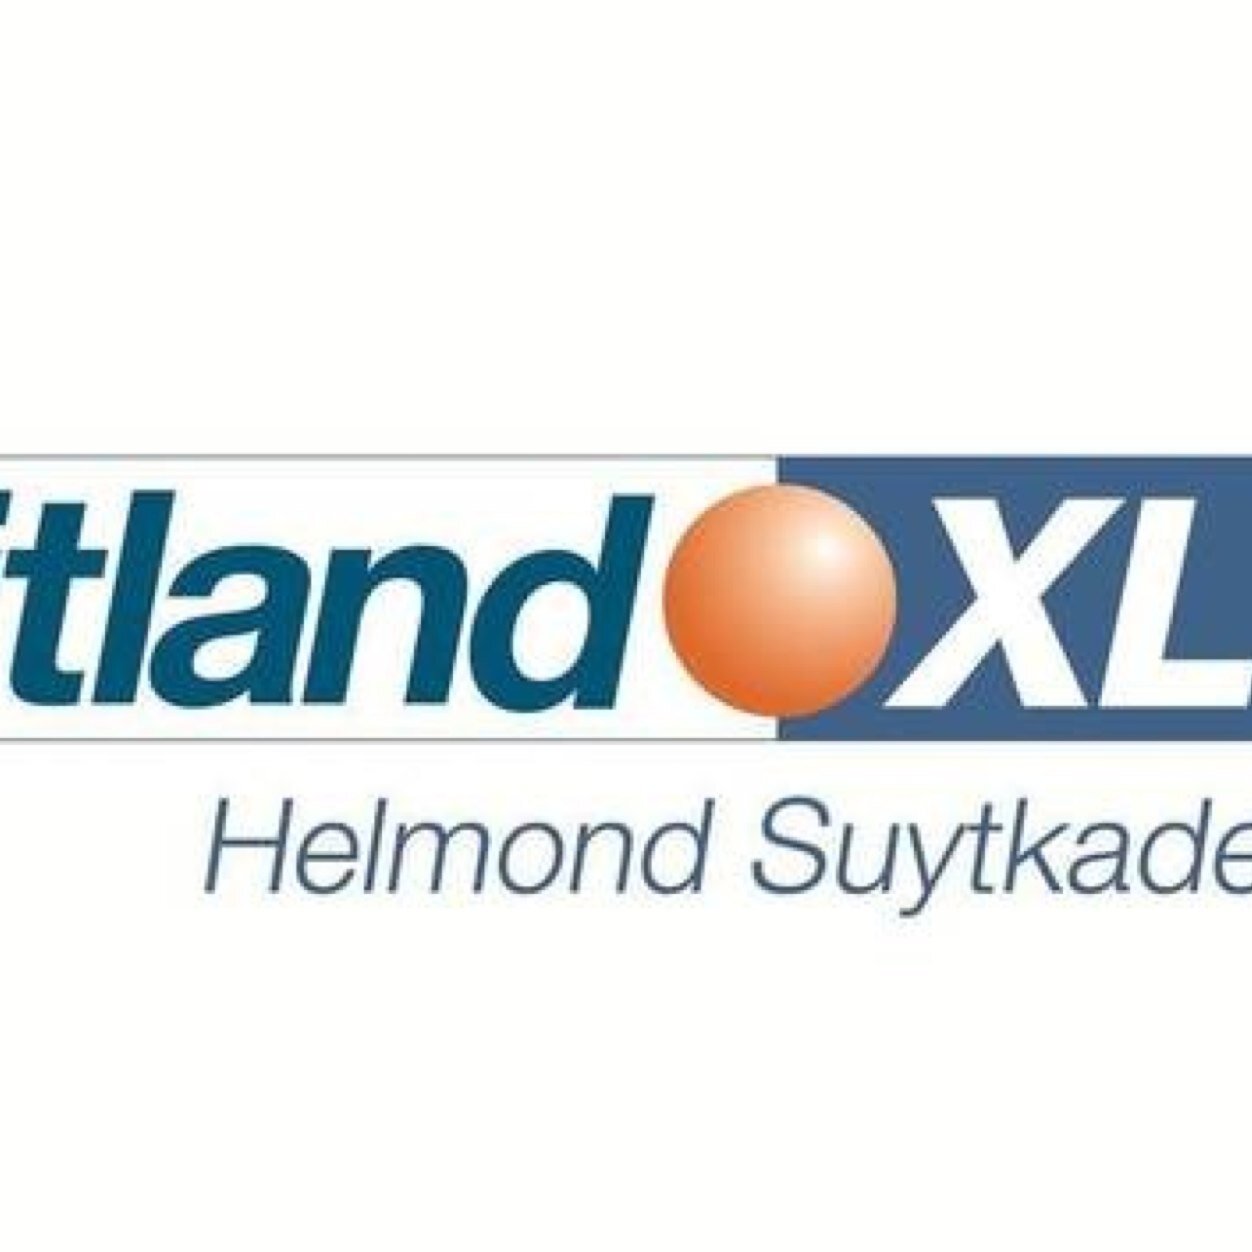 Fitland XL Helmond Suytkade | Het nieuwe stadsbeeld van Helmond | Gloednieuw multifunctioneel complex Helmond